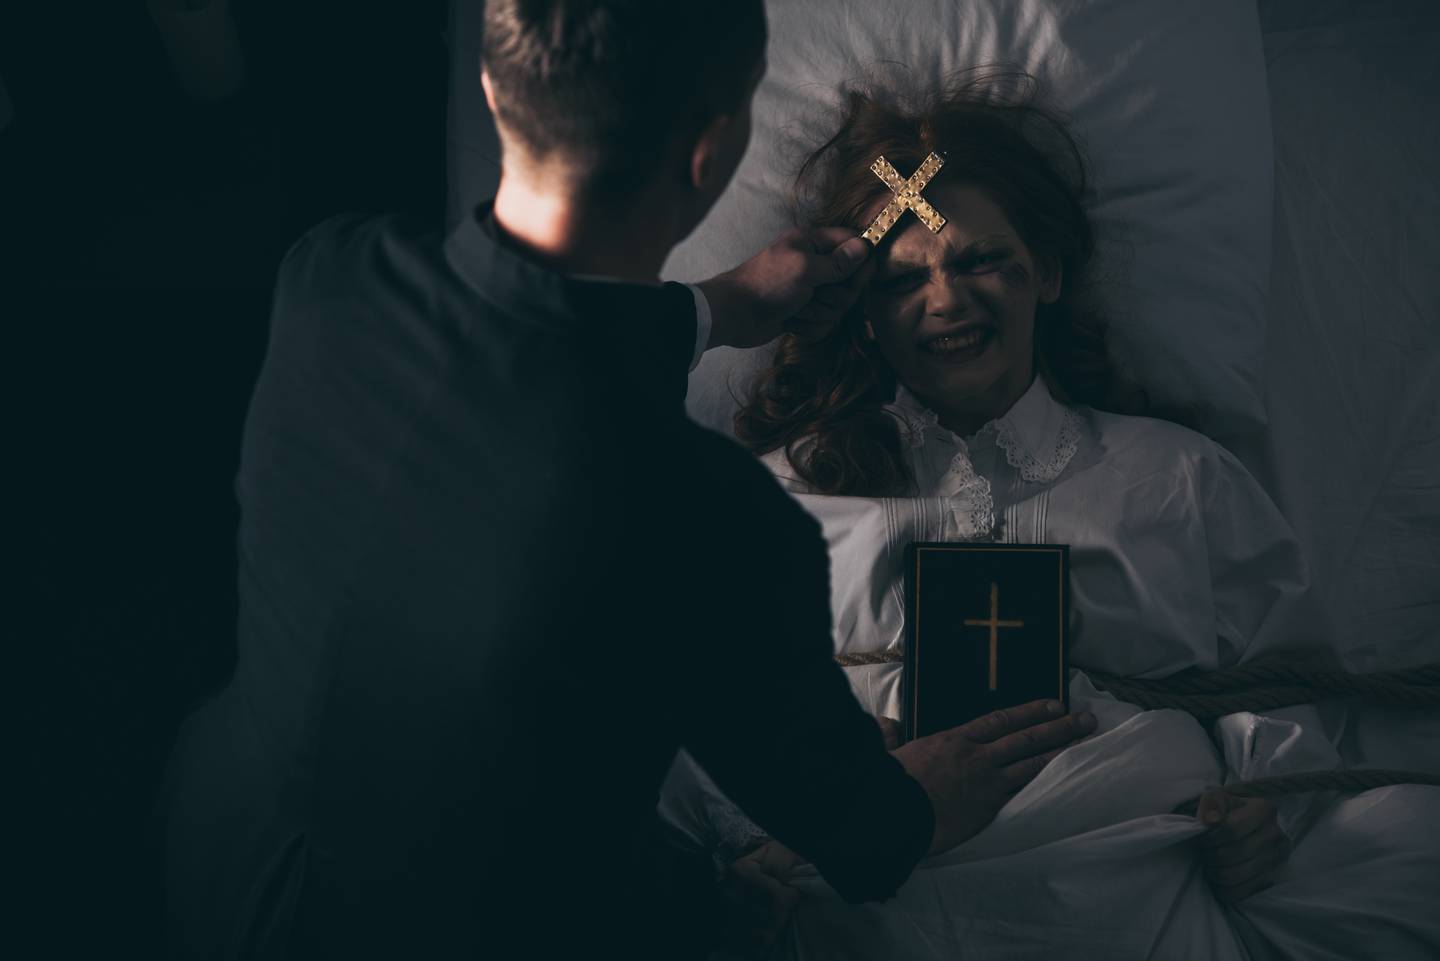 Gracias al costarricense, Israel Barrantes, fundador de Investigación paranormalCR, logramos contactar a uno de los exorcistas más reconocidos del mundo, el obispo canadiense Platón Angelakis